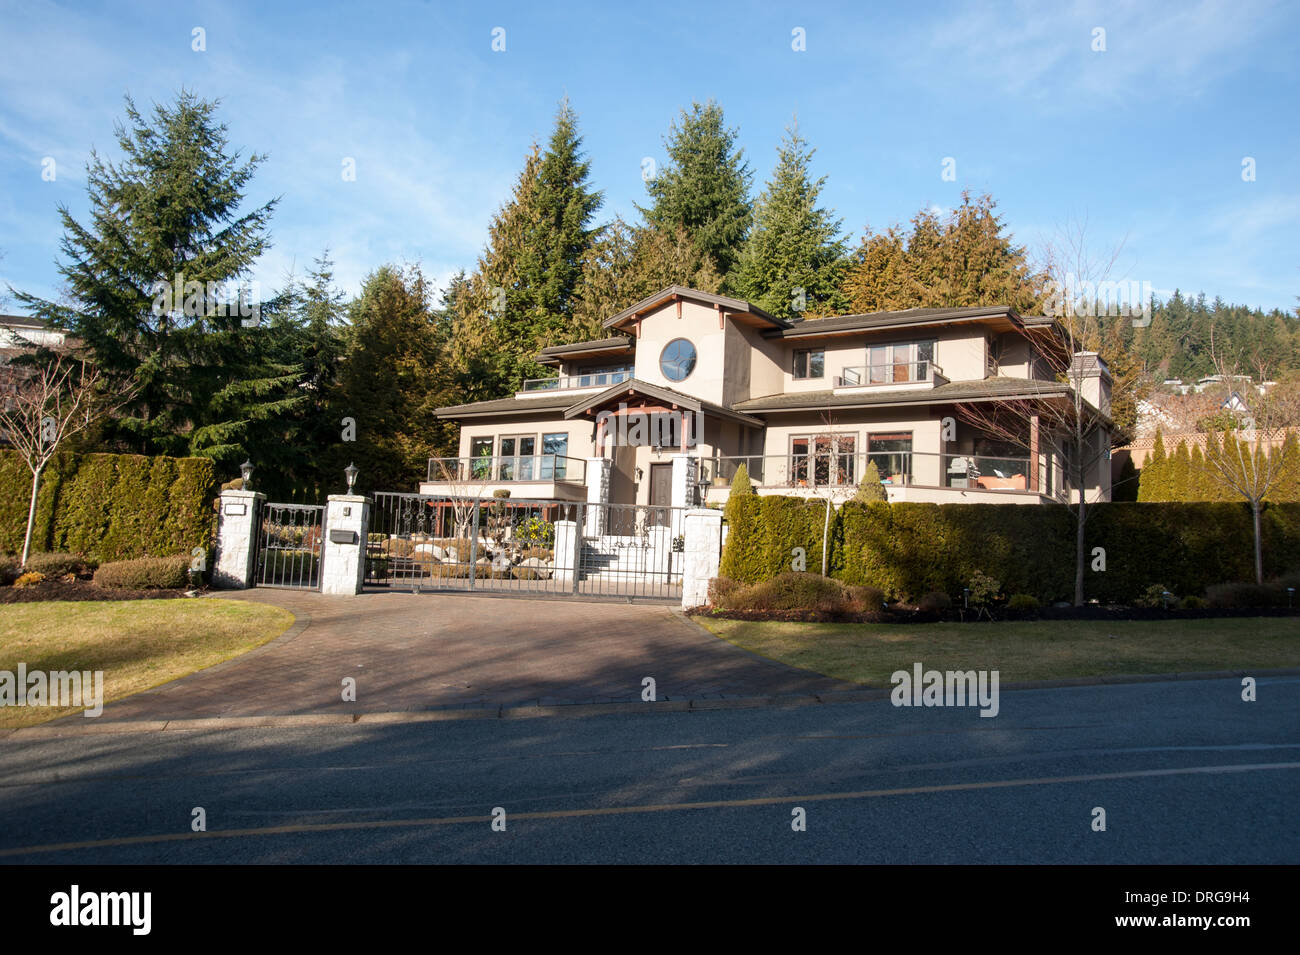 De l'extérieur de la maison Immobilier, West Vancouver, British Columbia, Canada sur une journée d'hiver ensoleillée Banque D'Images